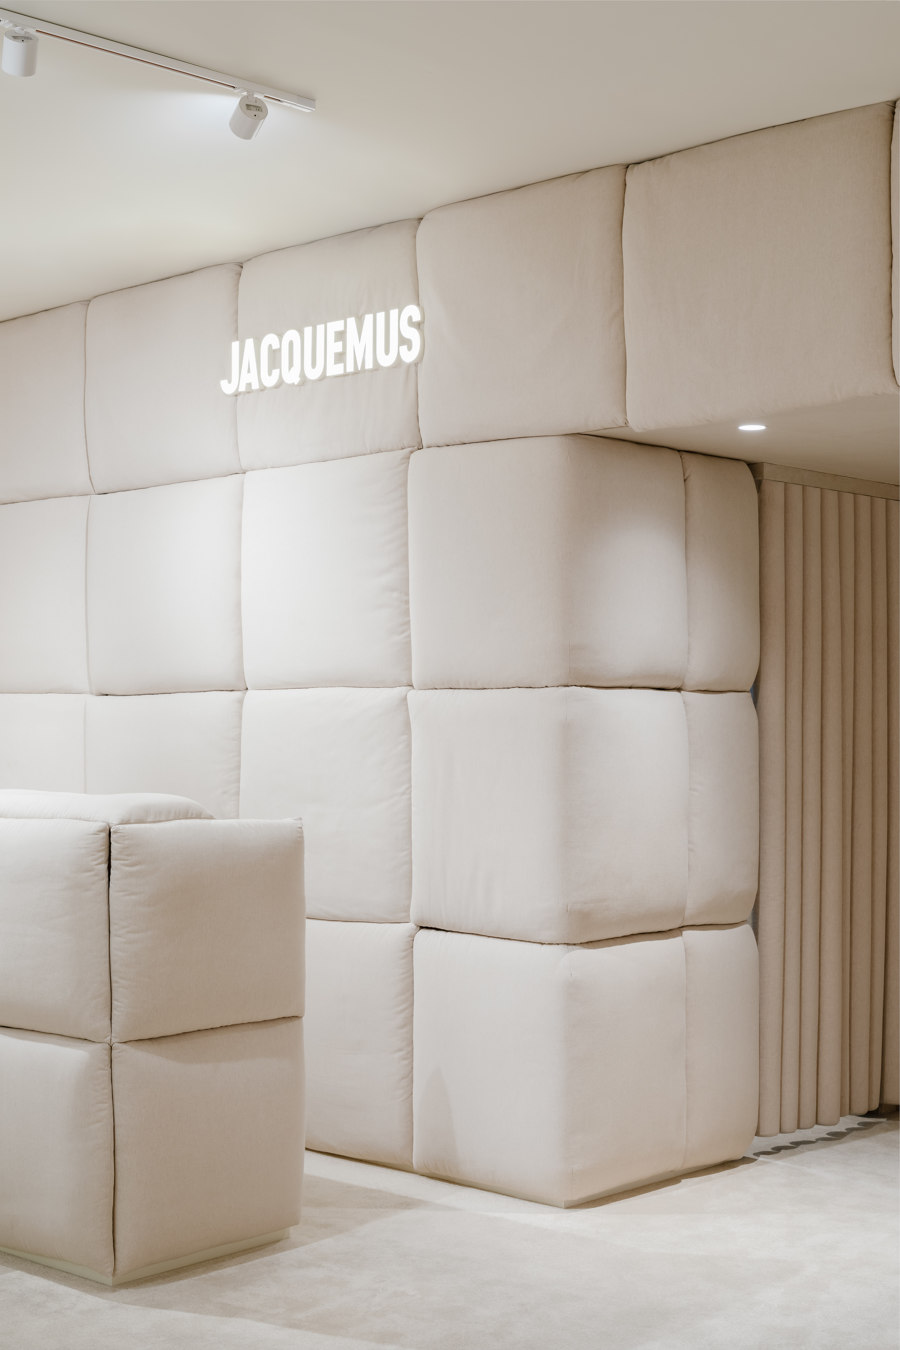 Jacquemus Store de AMO | Intérieurs de magasin